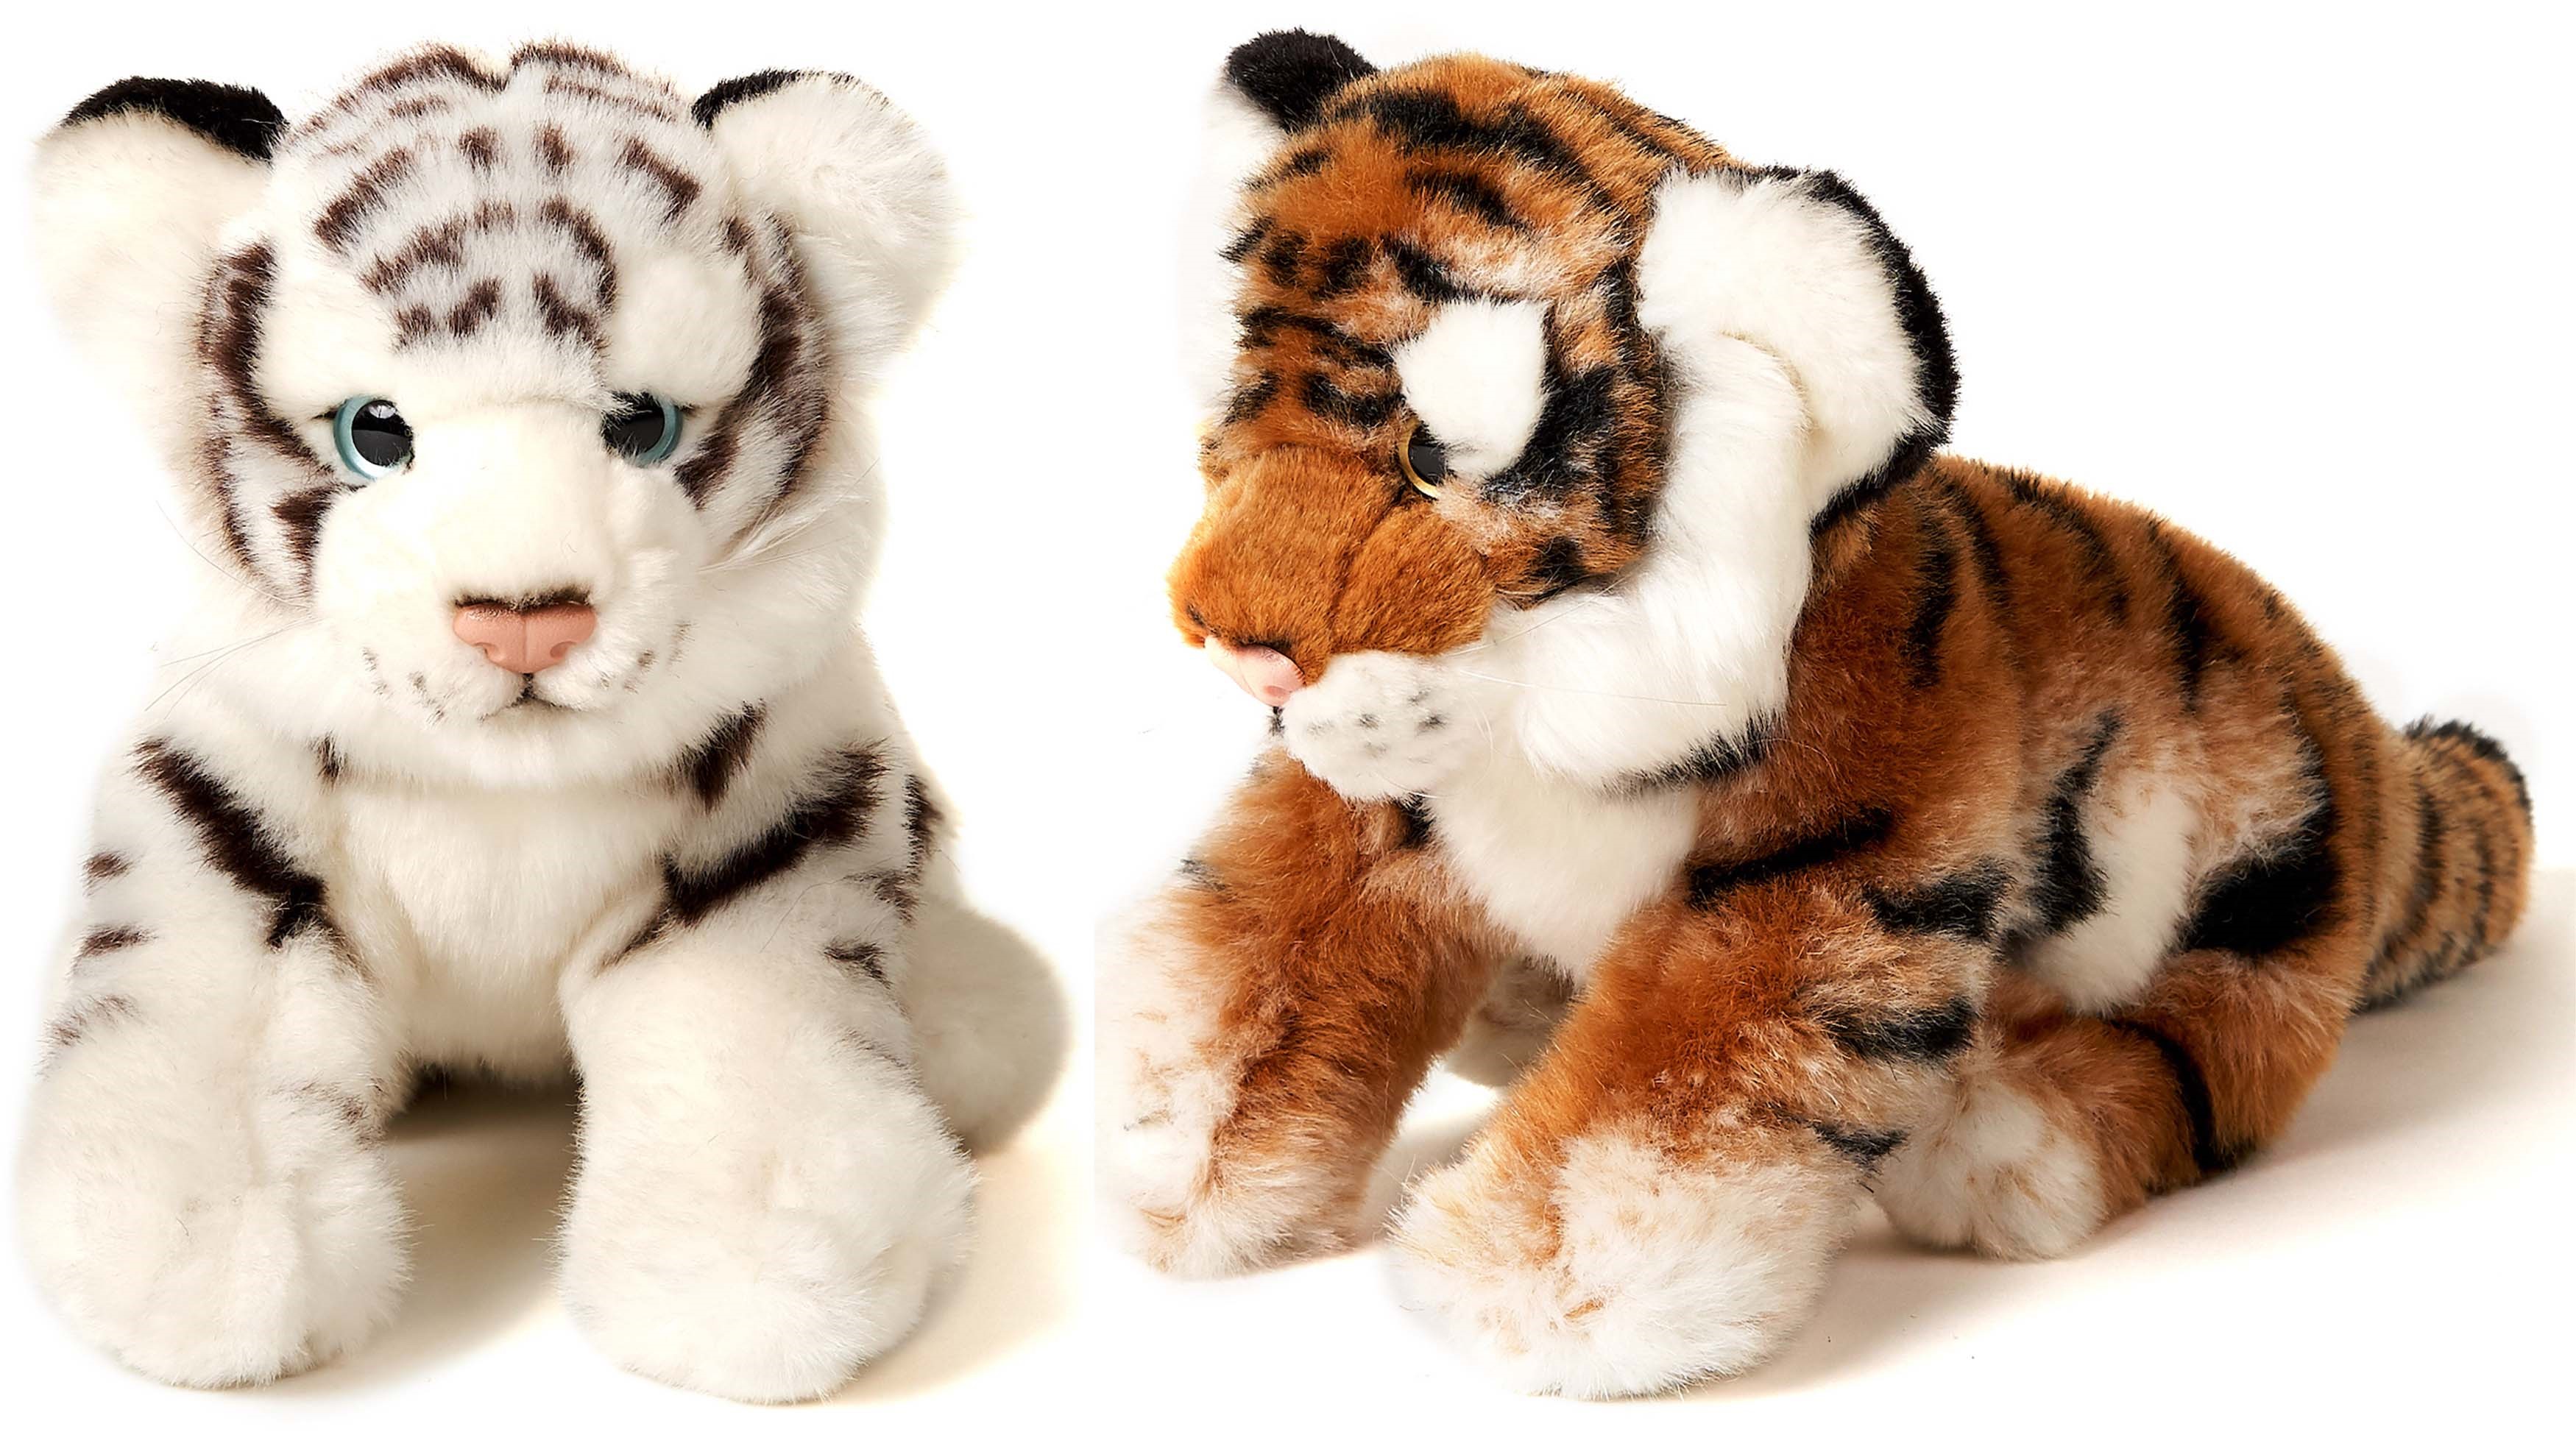 Tiger Baby, sitzend - 20 cm (Höhe) - Weiß ODER Braun